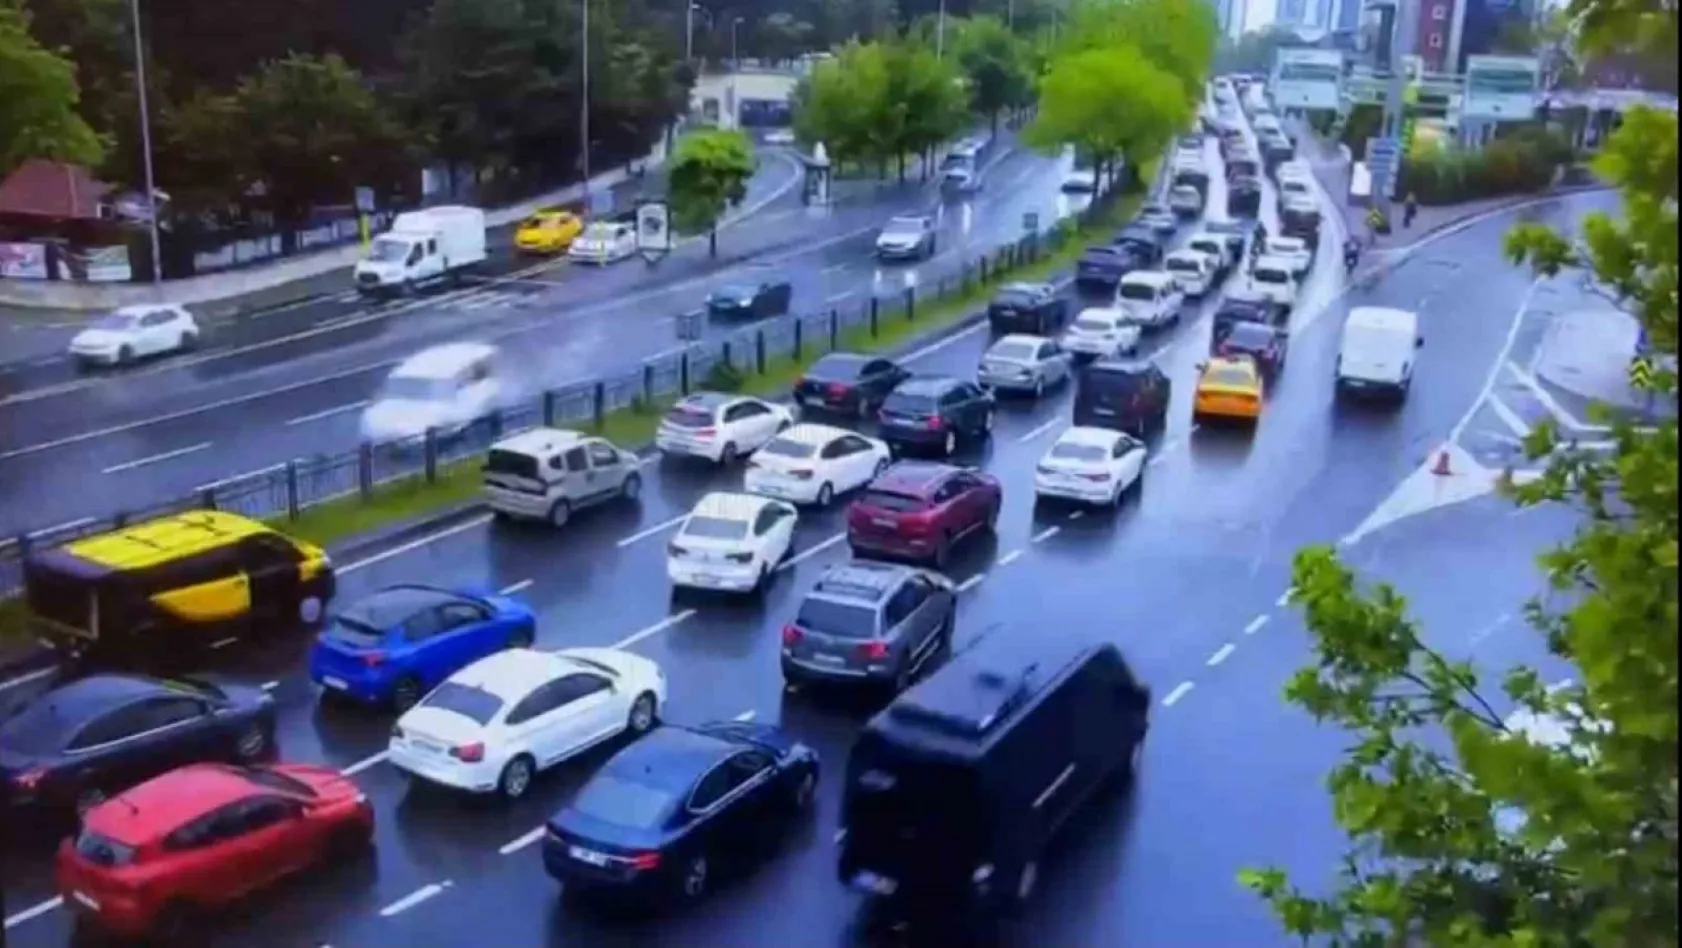 Beşiktaş'ta 8 aracın karıştığı feci kazanın görüntüleri ortaya çıktı: Araç karşı yöne böyle uçtu